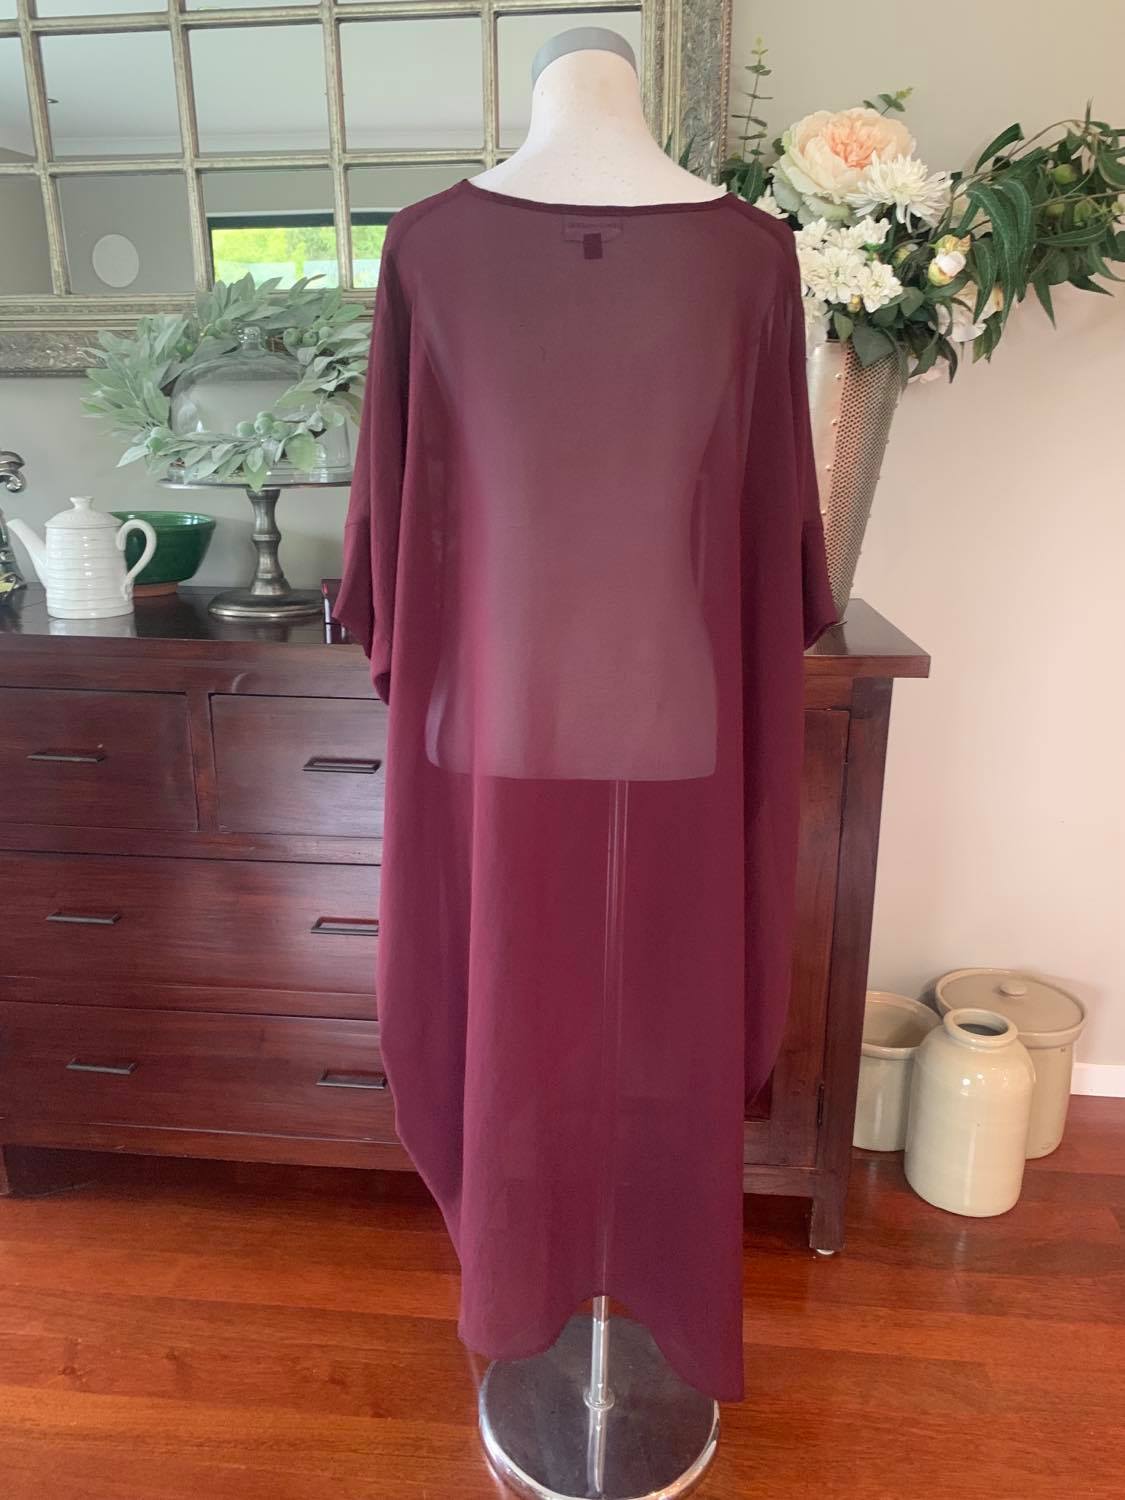 Lotti Plain Tunic/Dress OSFA 7 Colour Options